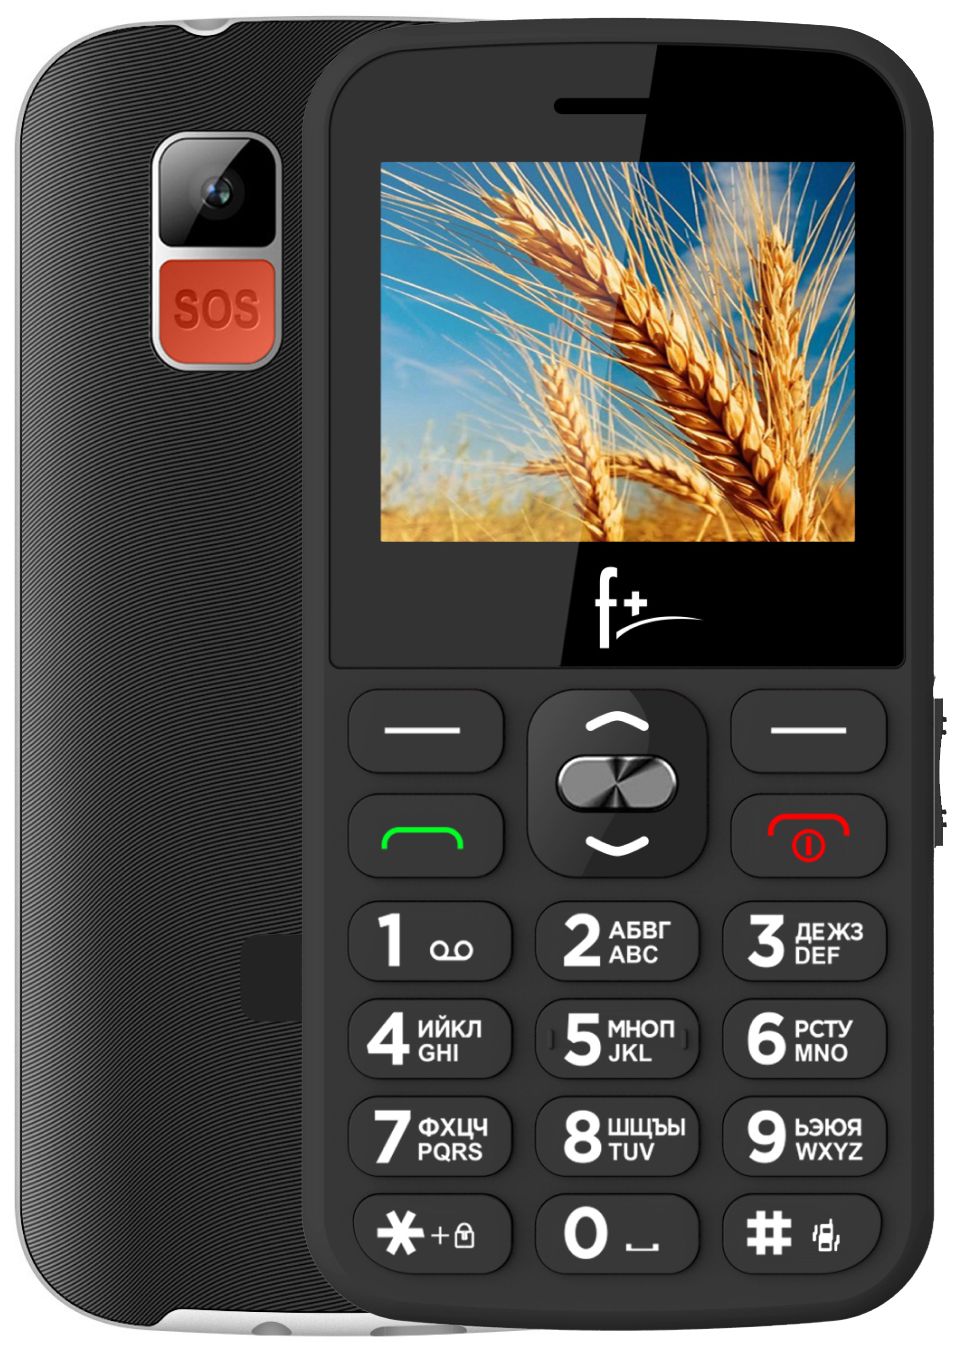 Мобильные телефон Ezzy5 Black цена и фото